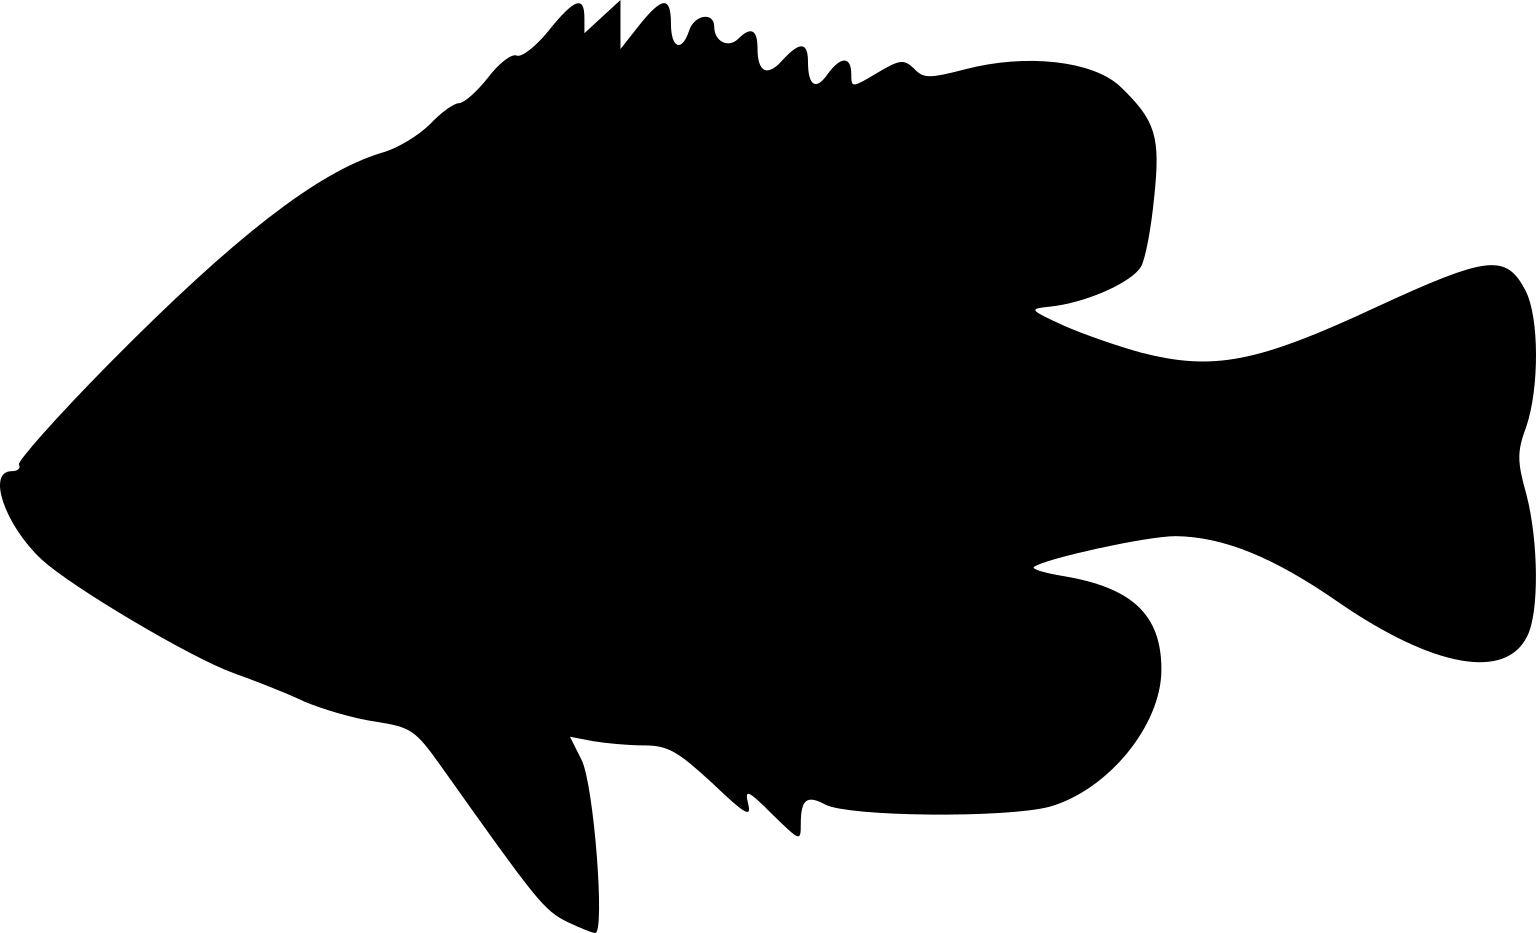 Lepomis gibbosus